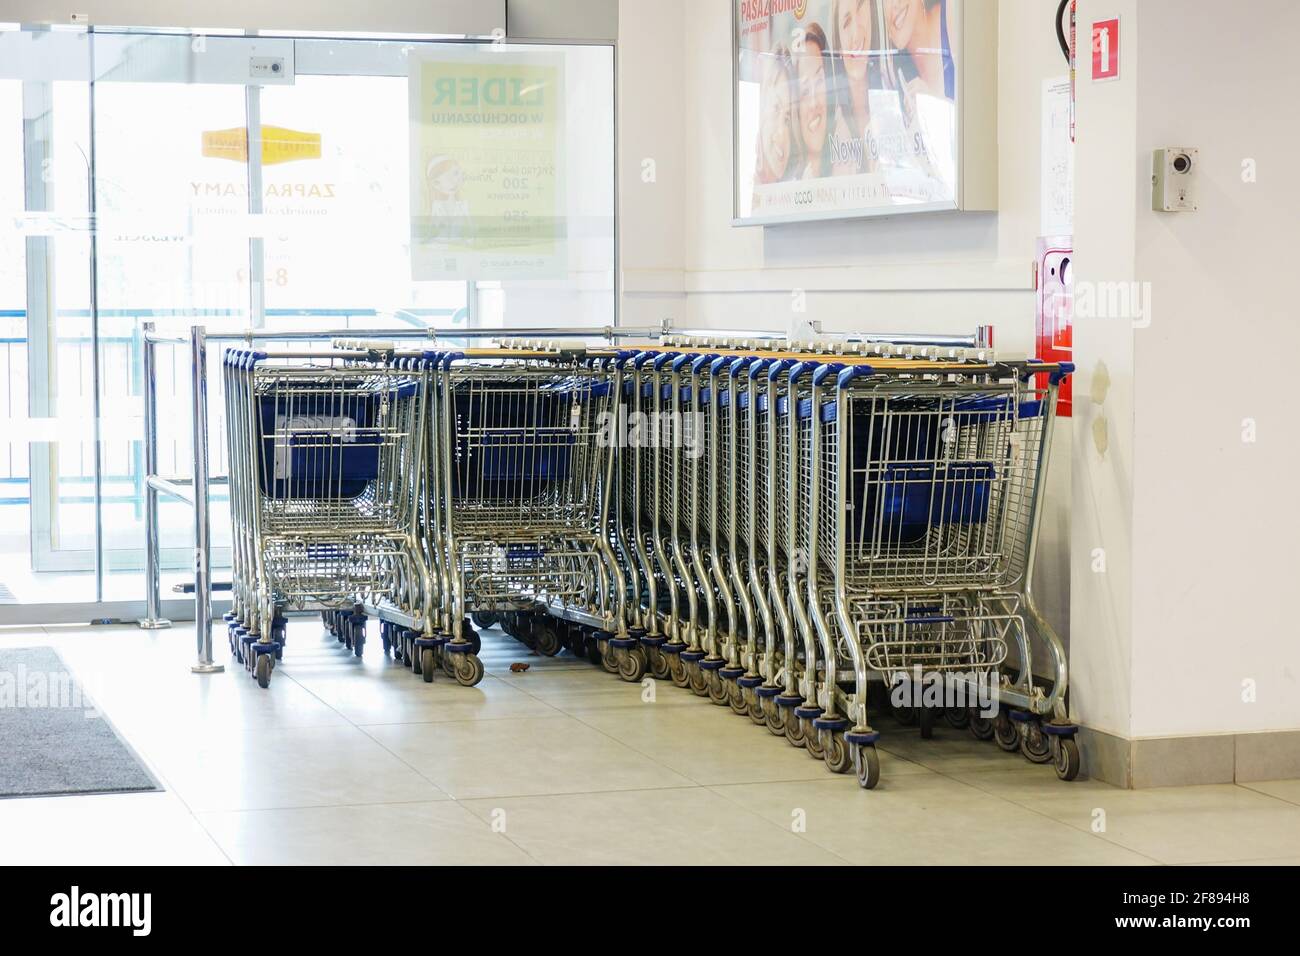 POZNAN, POLONIA - 18 marzo 2014: File di carrelli per lo shopping presso un supermercato Foto Stock